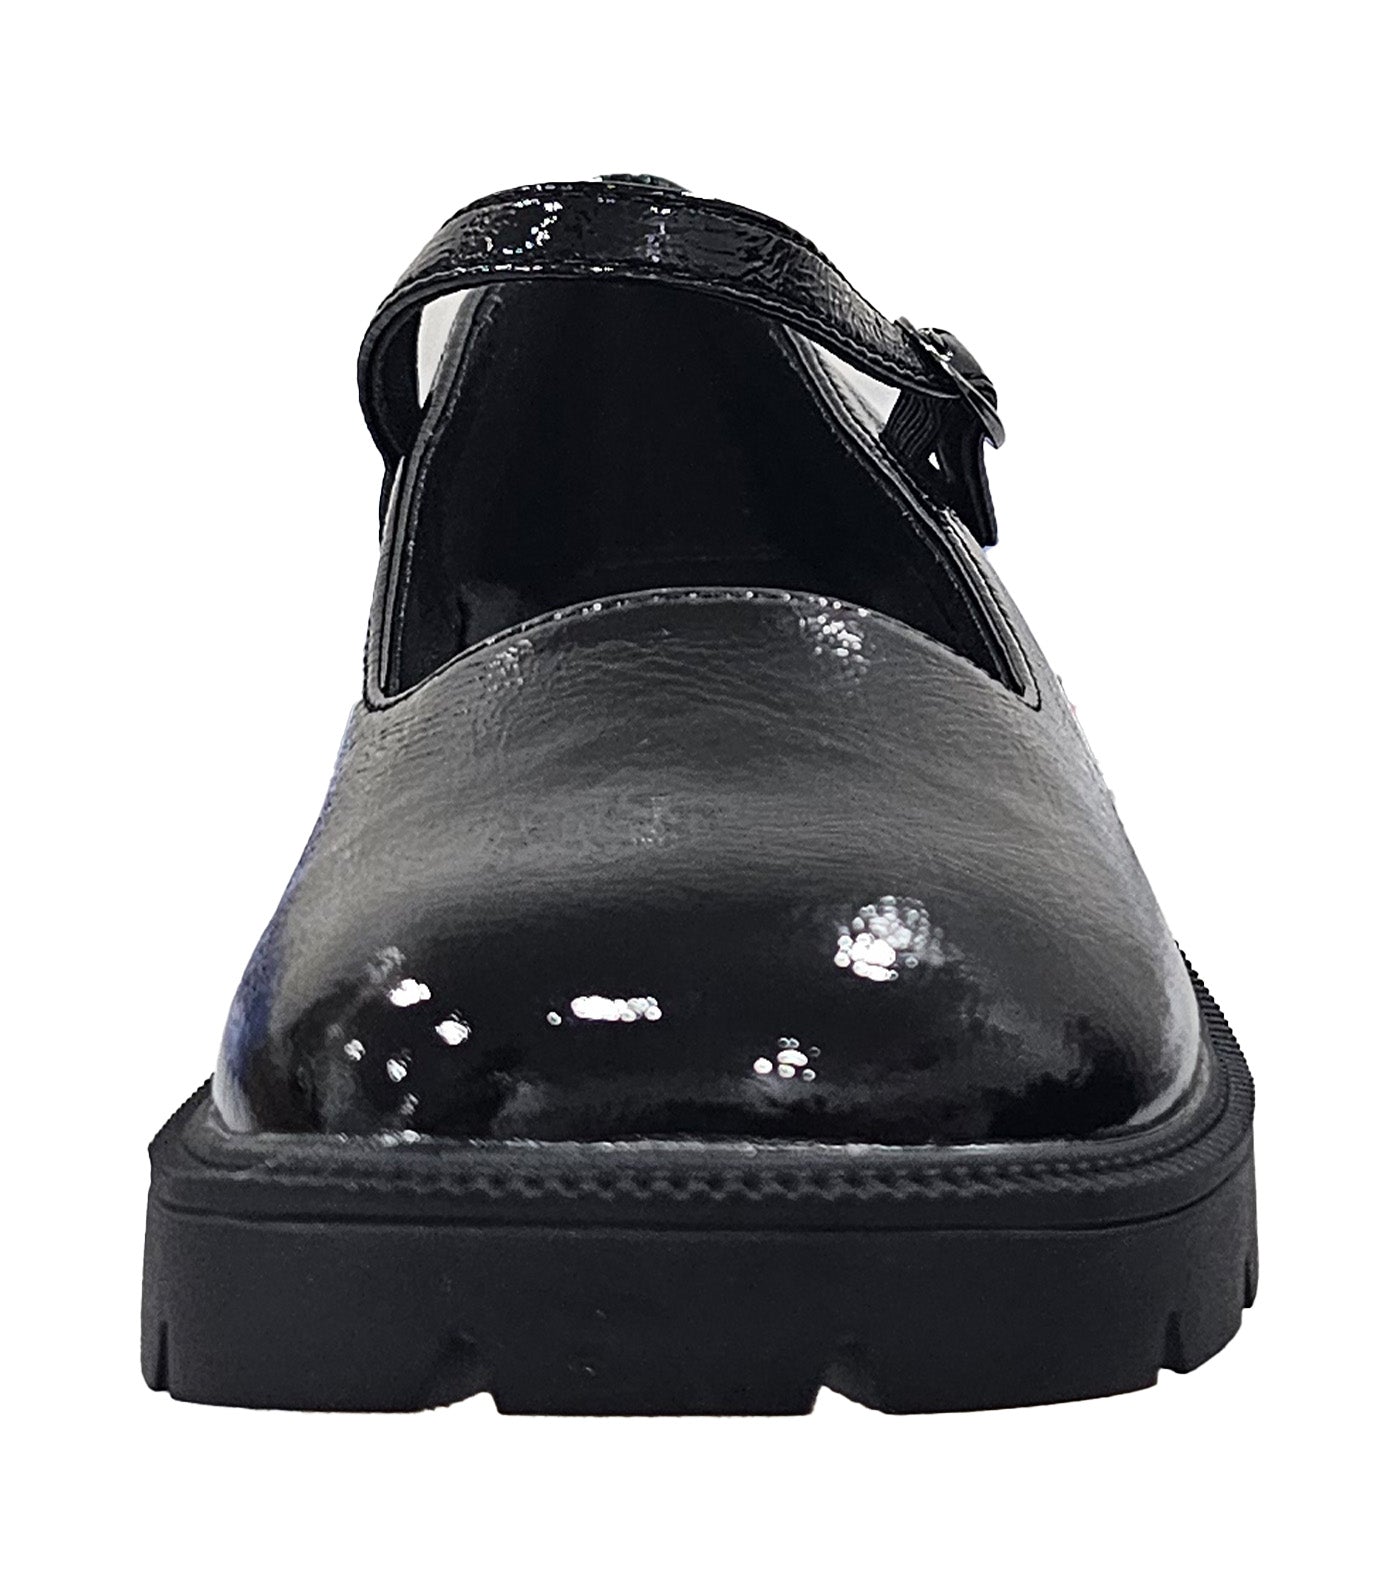 Lottie Casual Shoes Black